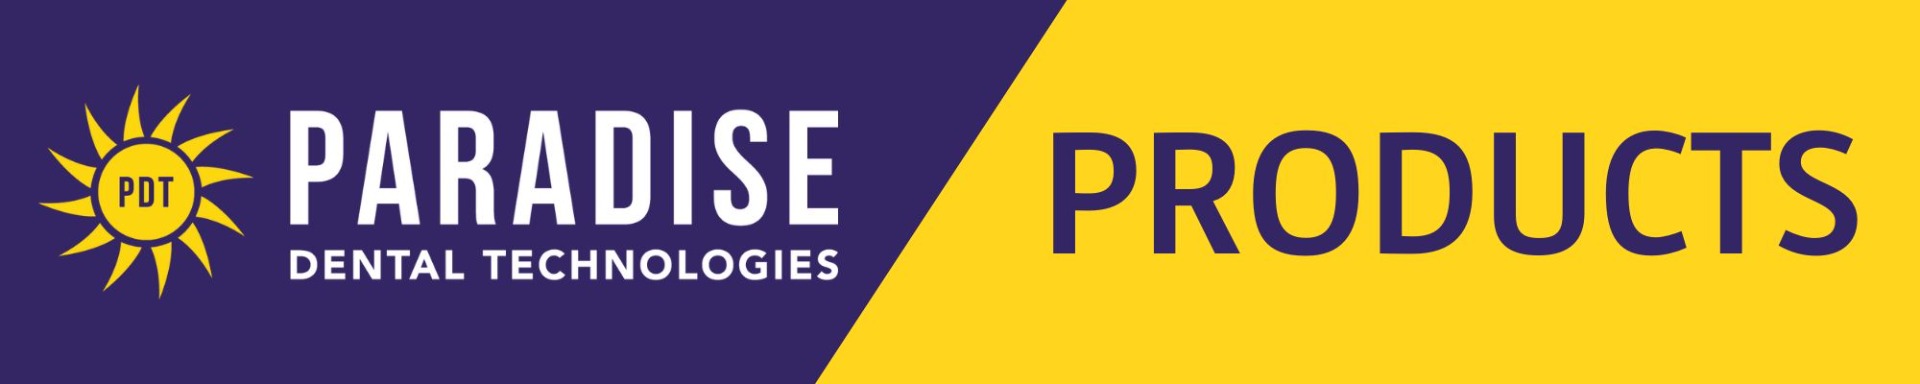 PDT Brand Banner